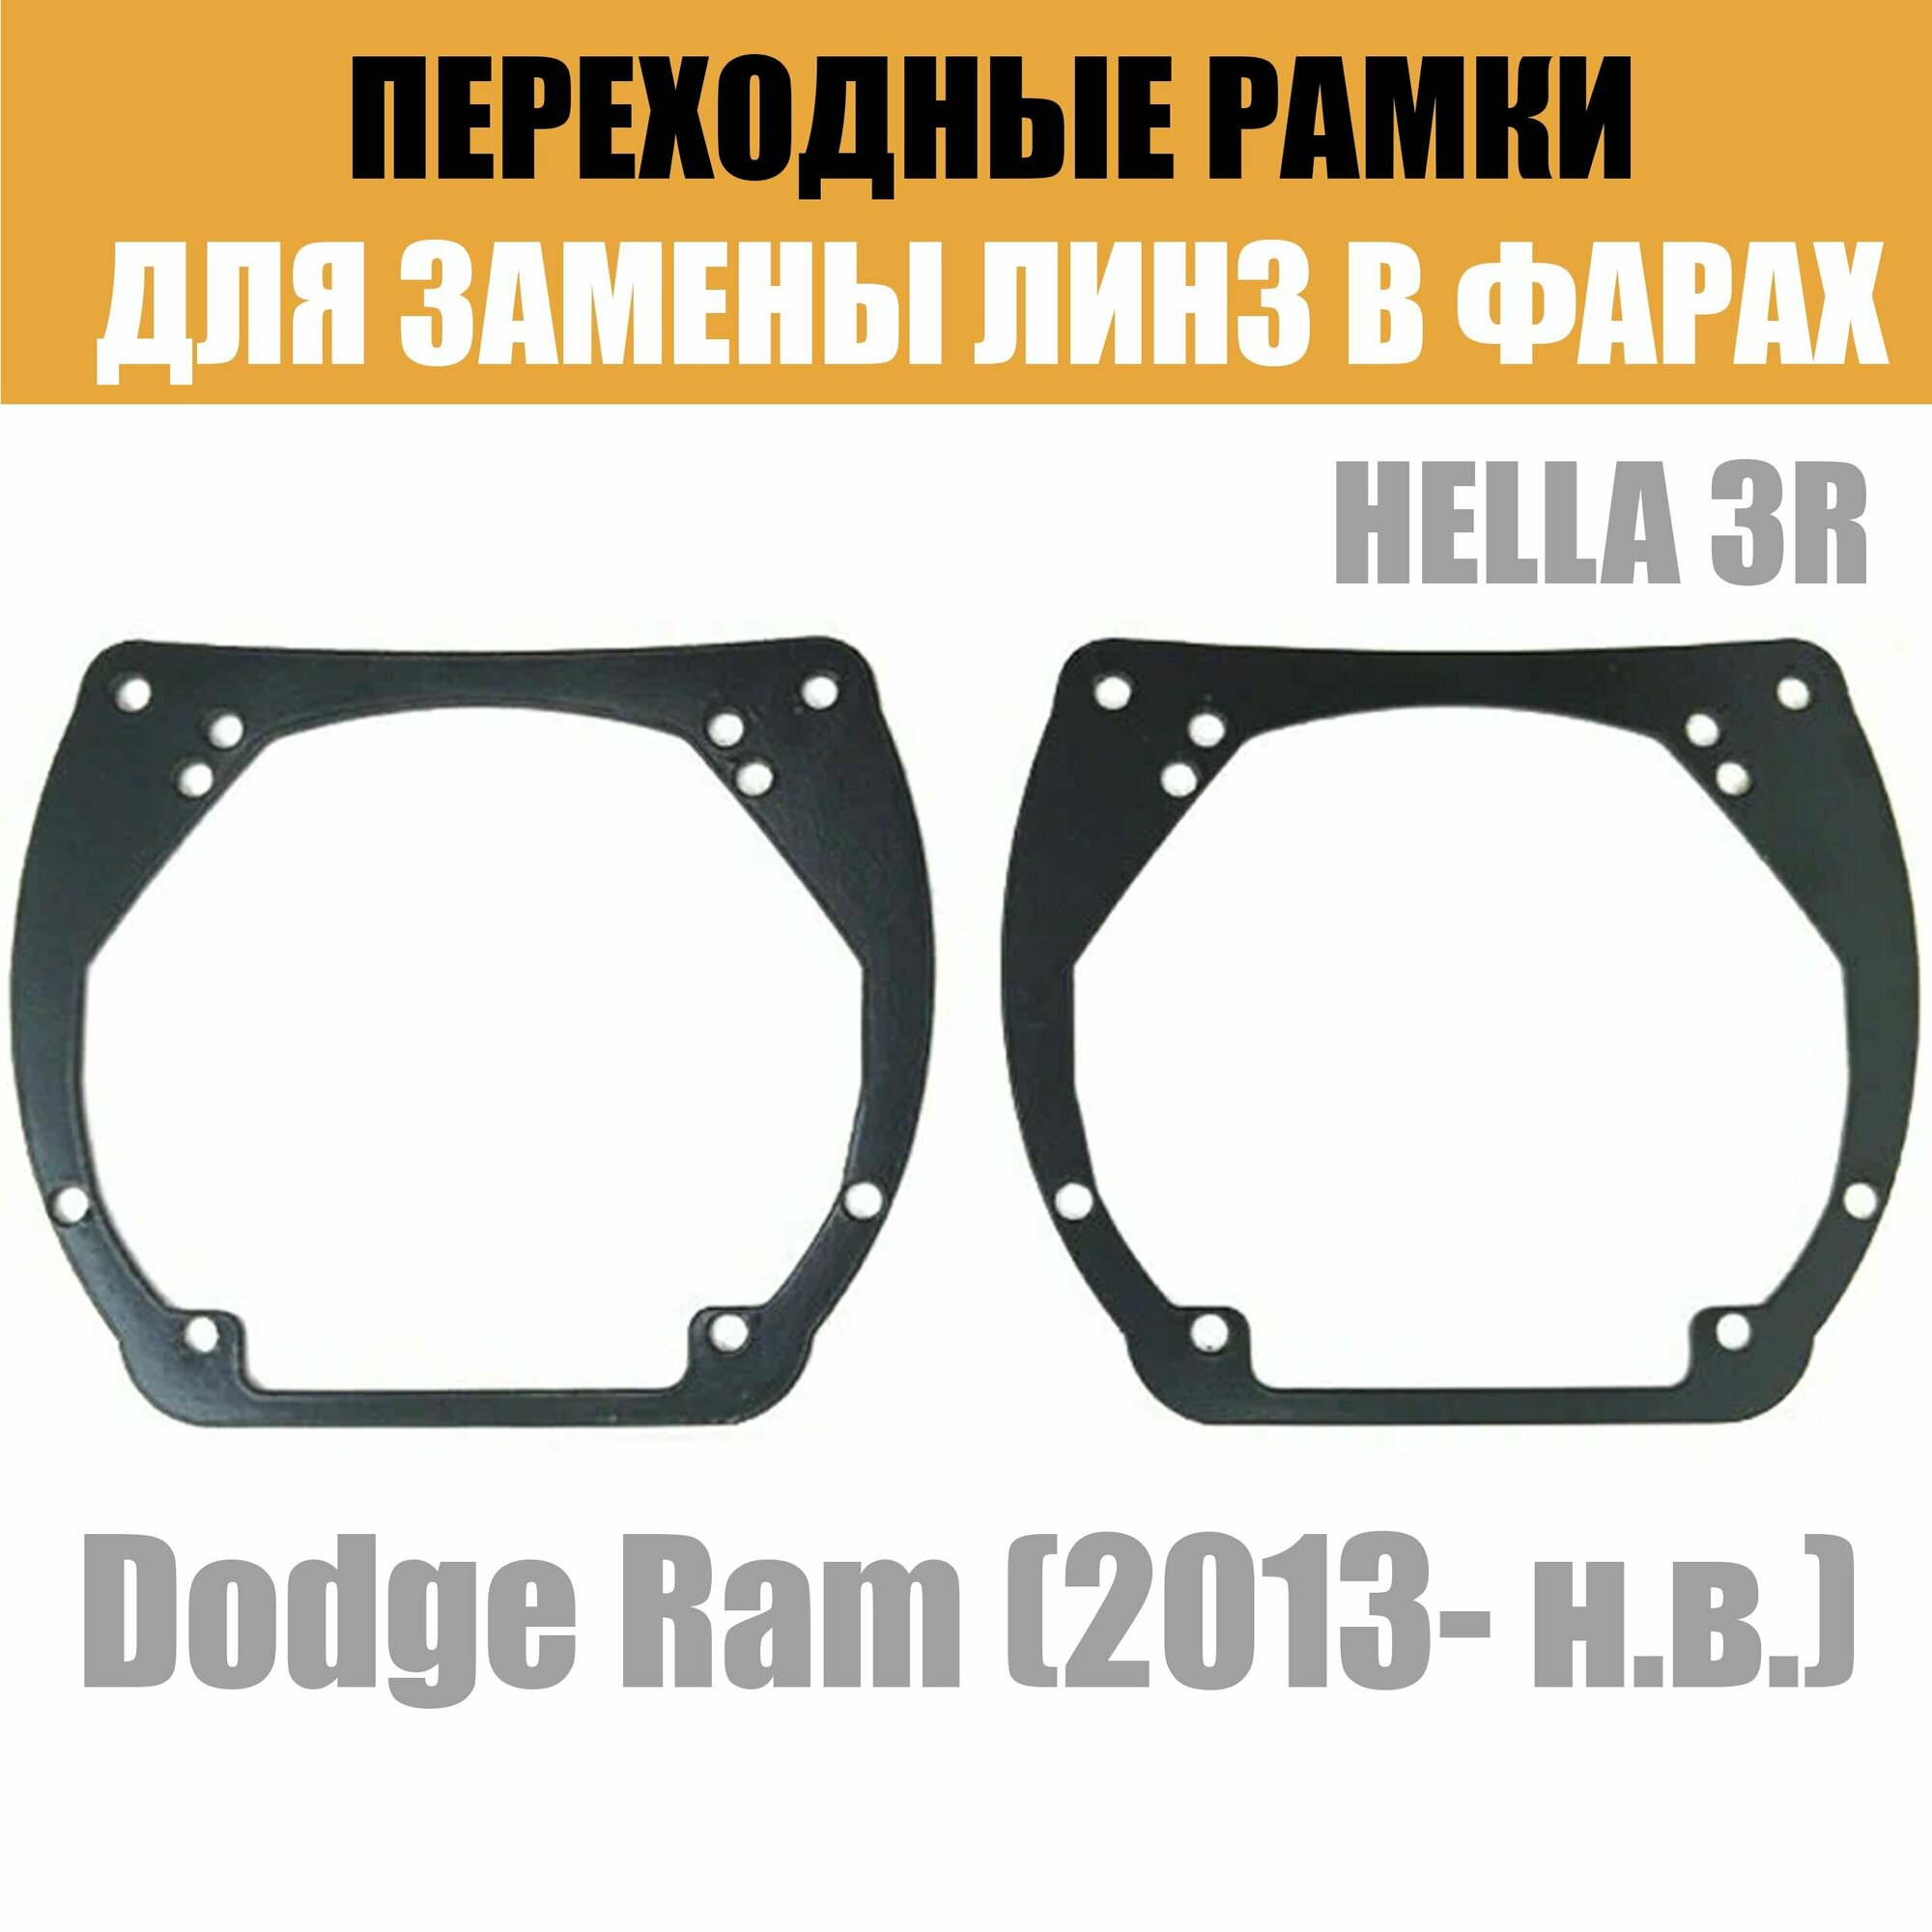 Переходные рамки для линз №12 на Dodge Ram (2013-2019) под модуль Hella 3R/Hella 3 (Комплект 2шт)